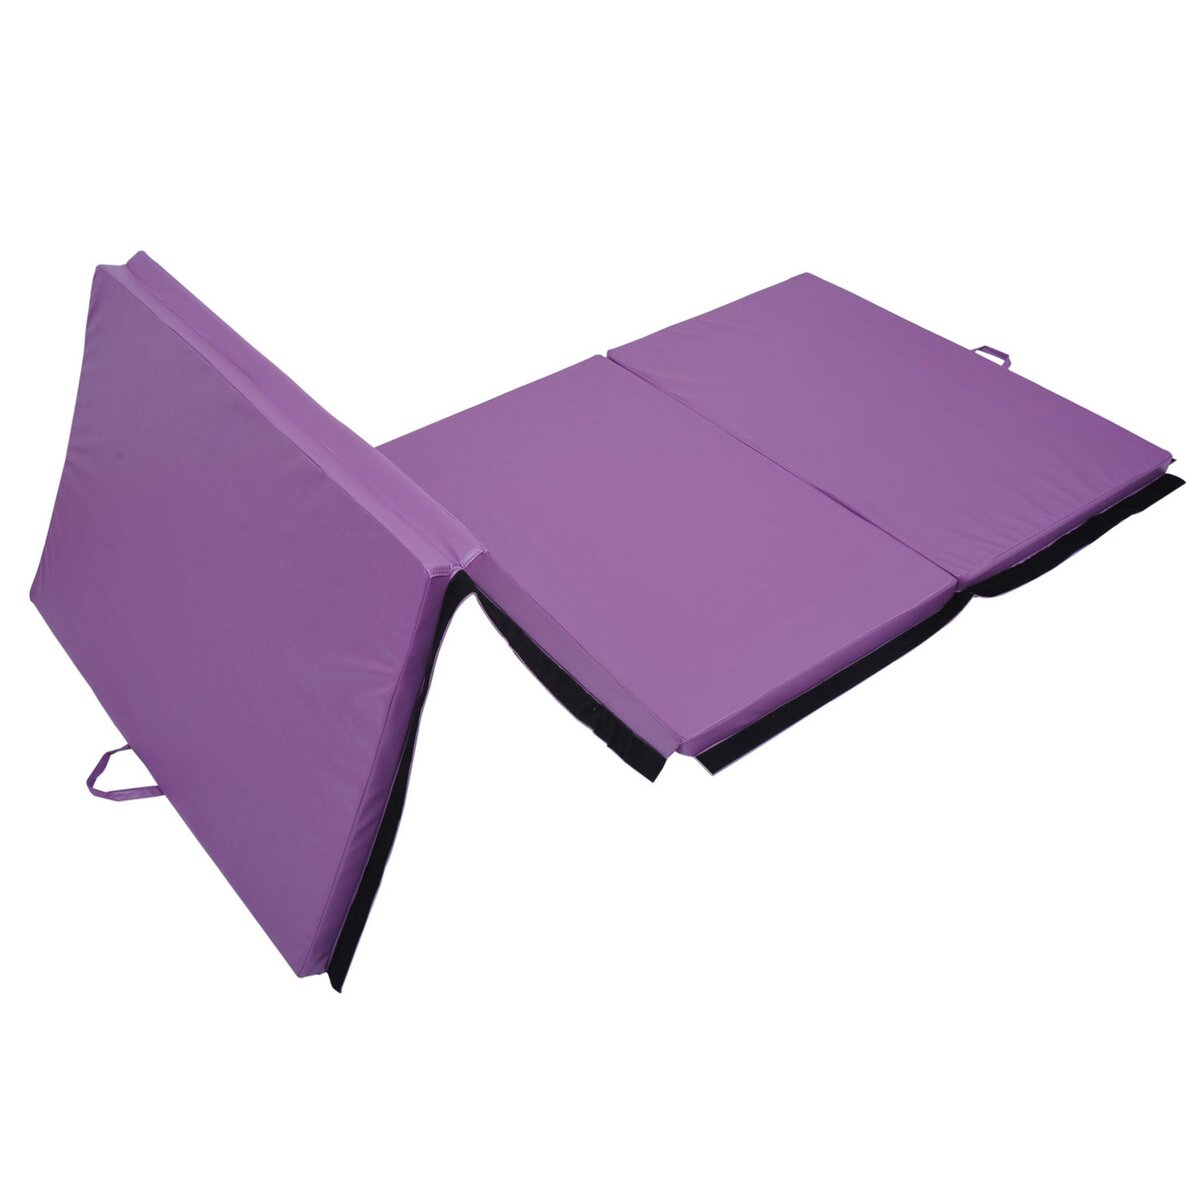 HOMCOM Tapis de sol gymnastique Fitness pliable portable rembourrage mousse  5 cm grand confort revêtement synthétique dim. 2,93L m x 1,15l m violet pas  cher 